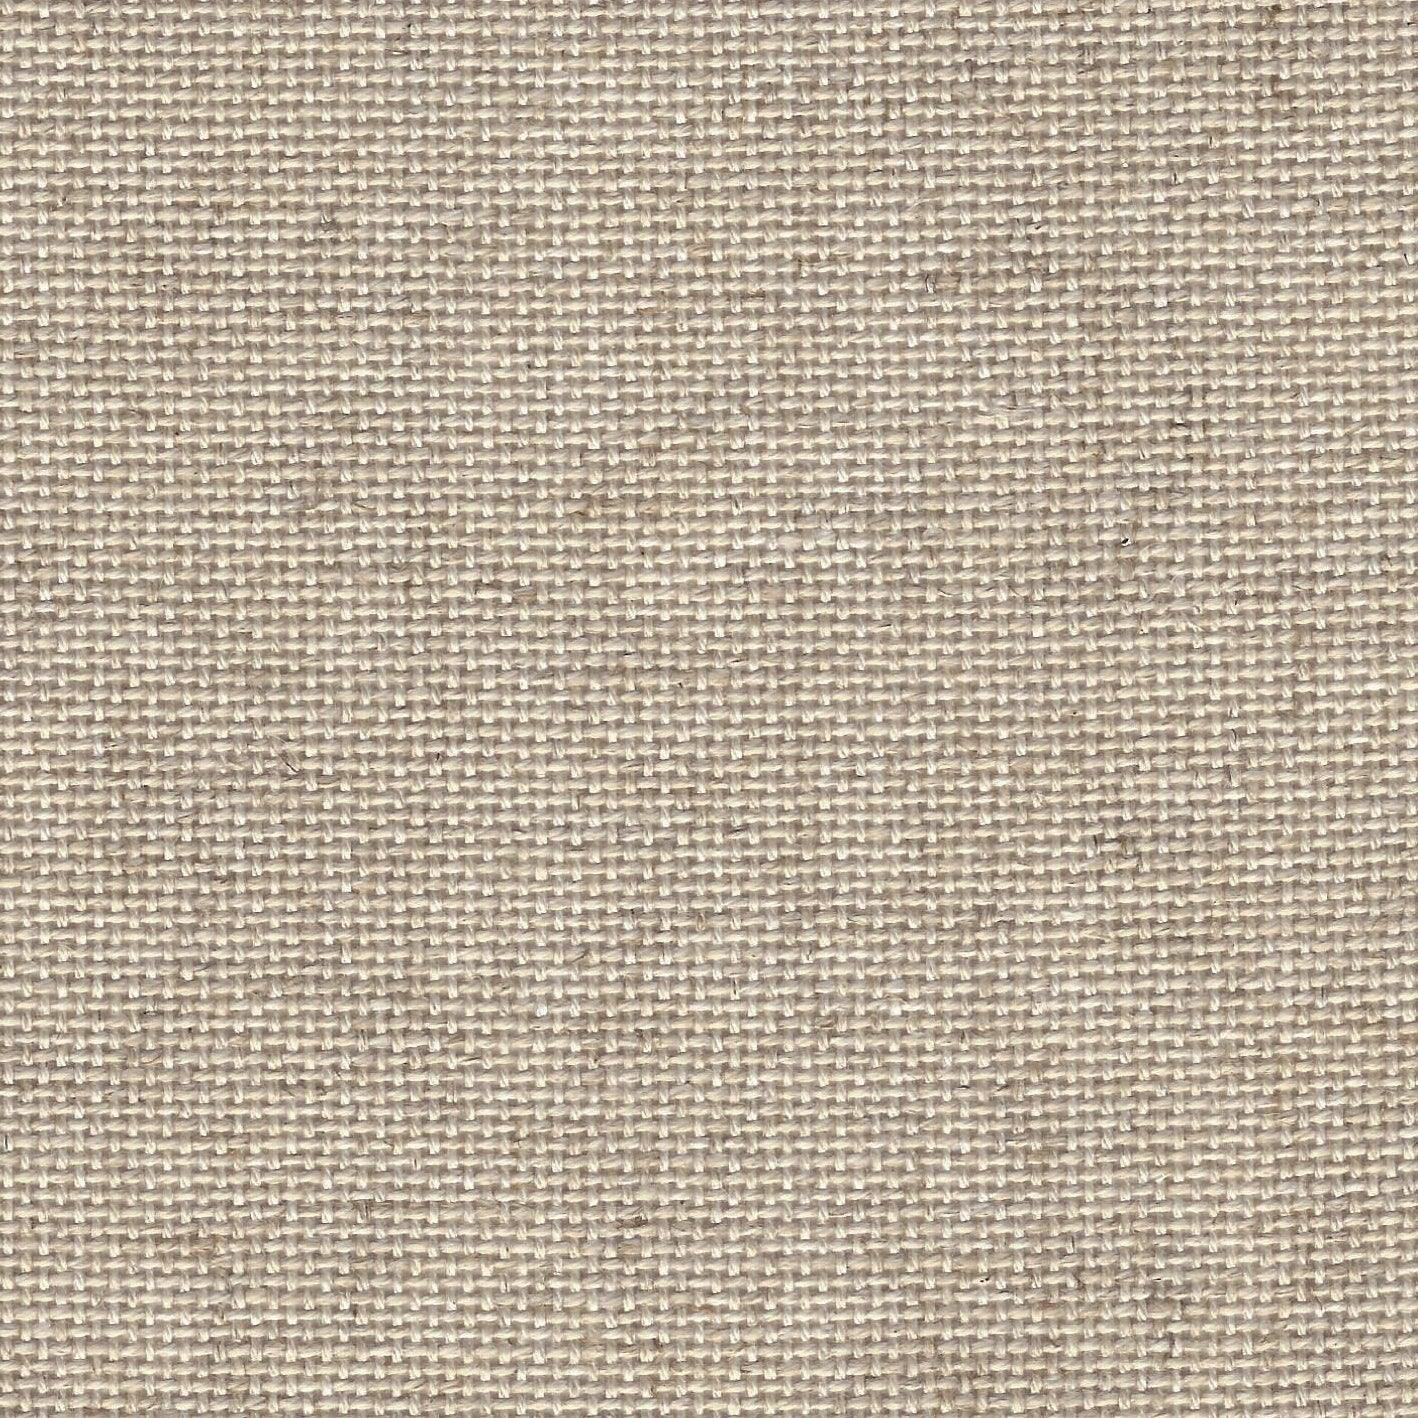 50 x 54 cm Aida 18 count ecru cross stitch fabric | 7,2 crosses per cm